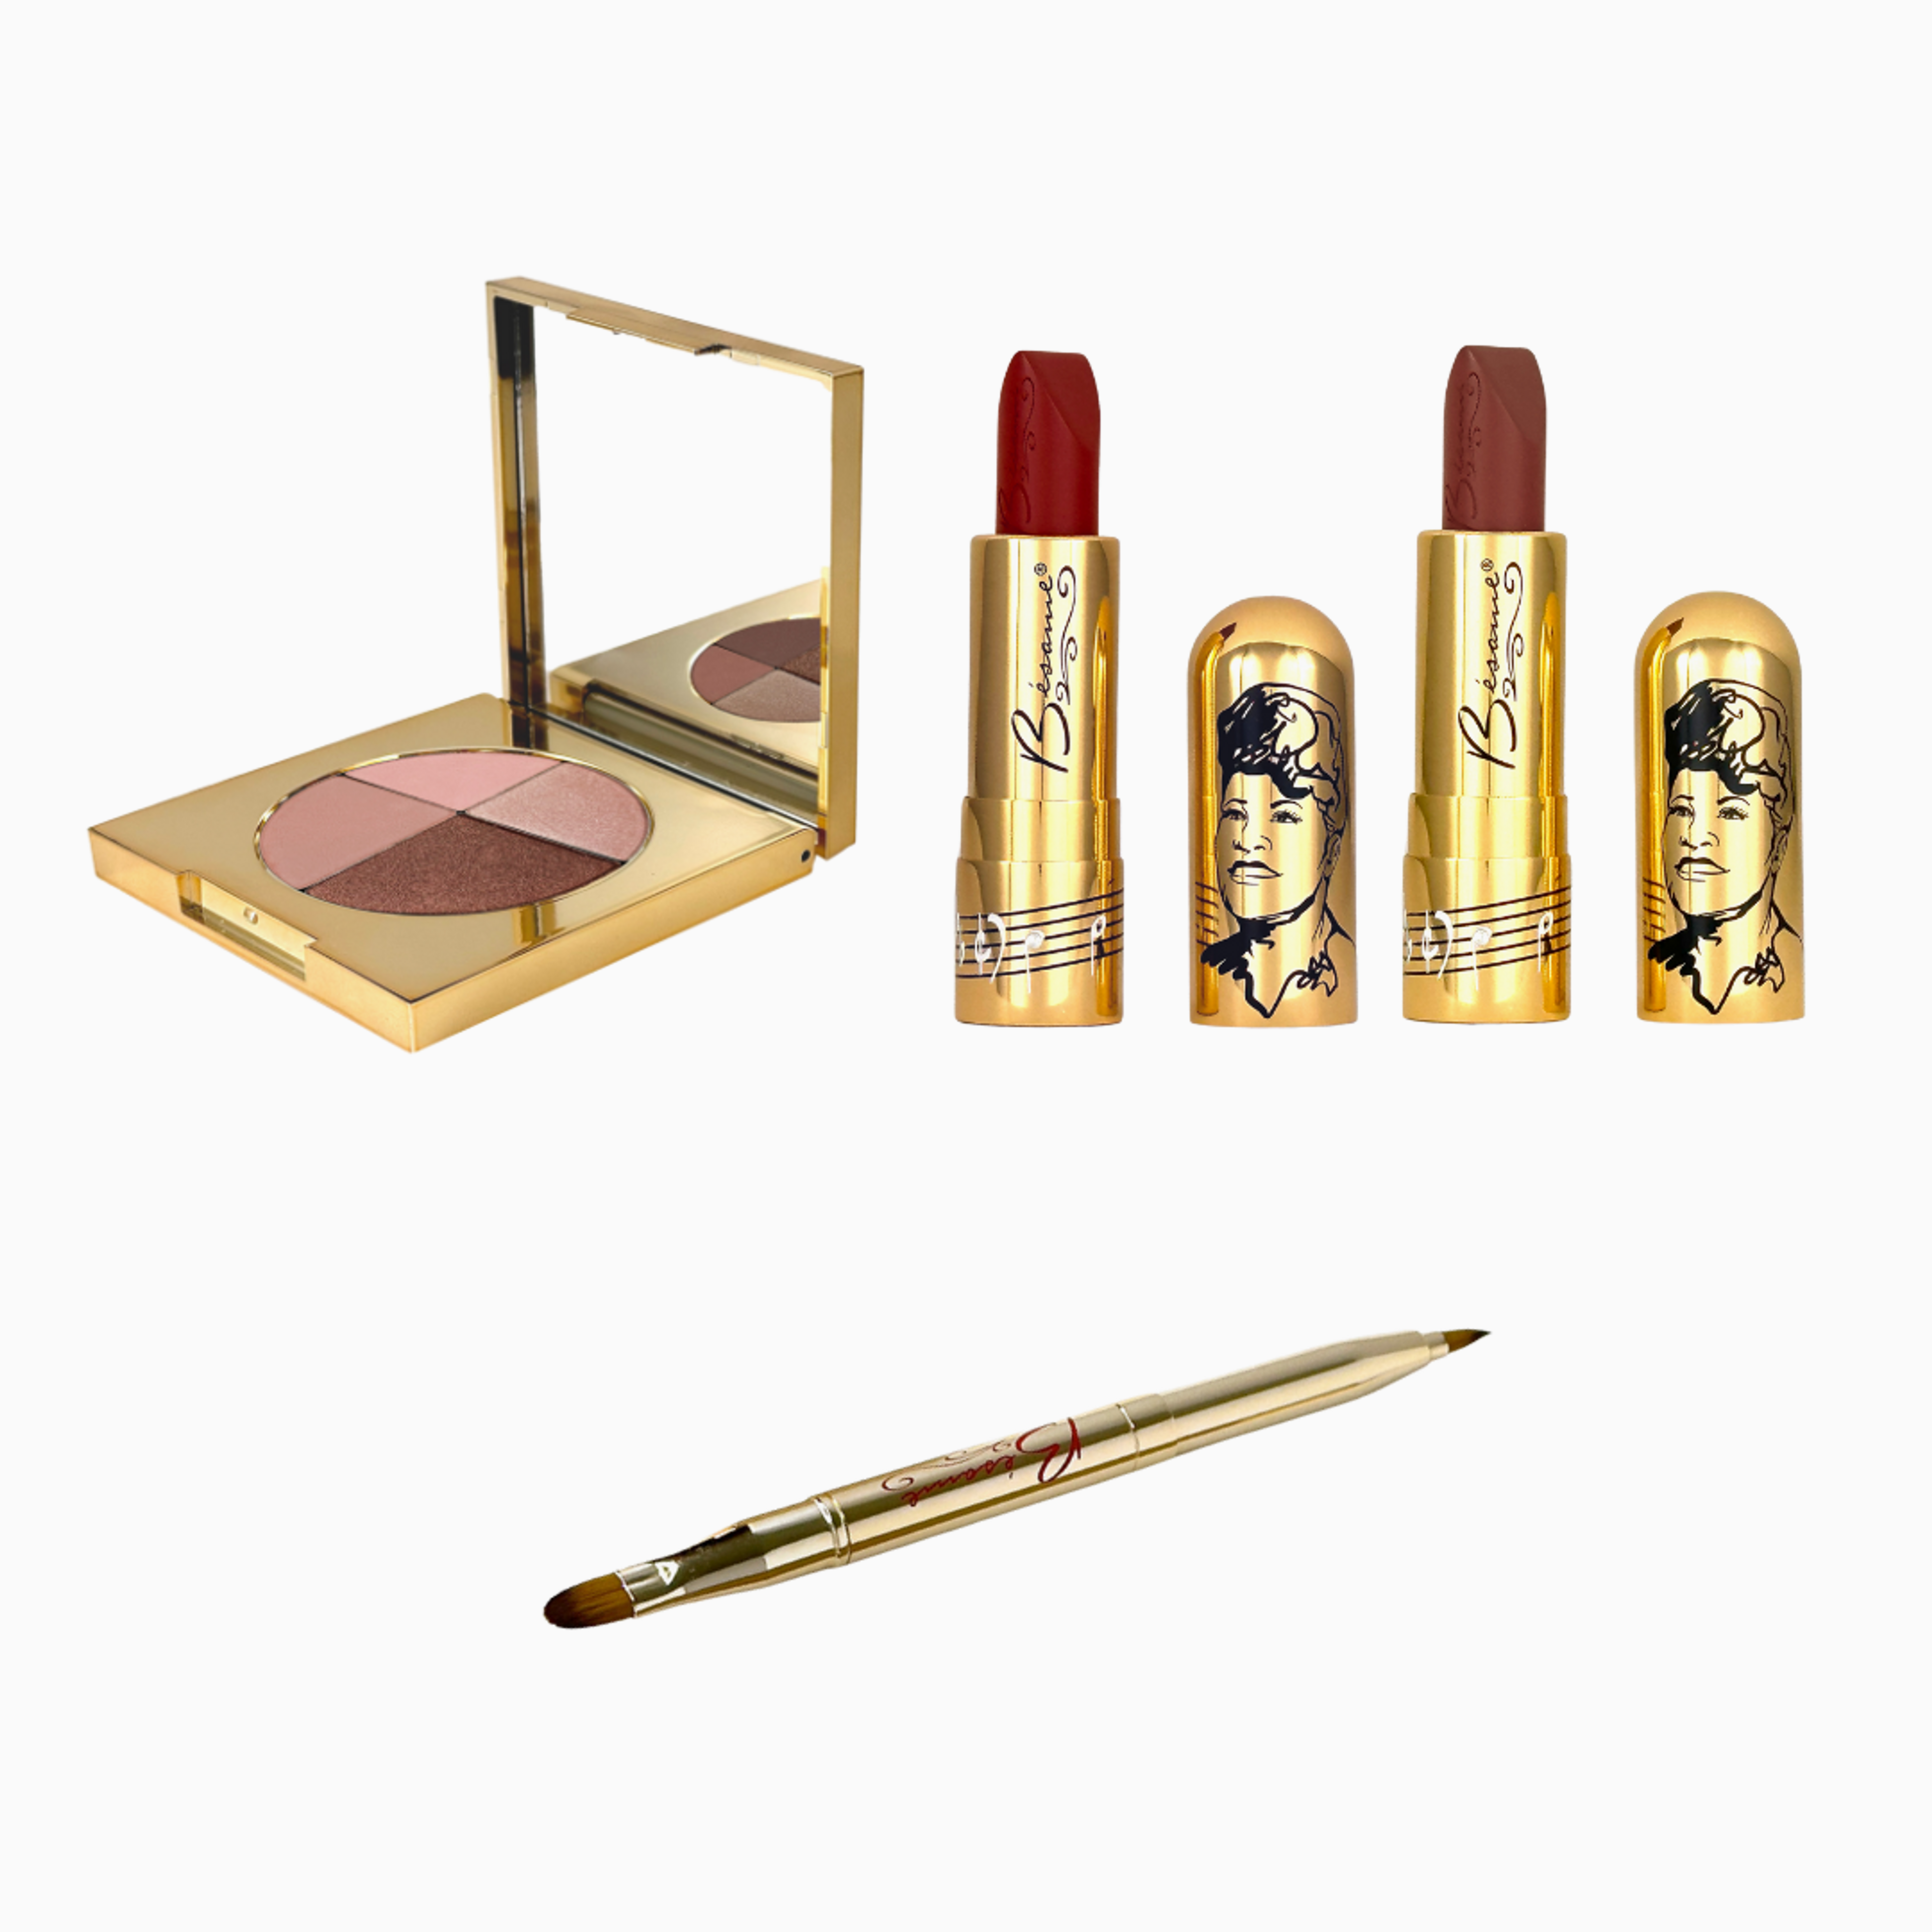 Ella Fitzgerald Makeup Gift Set